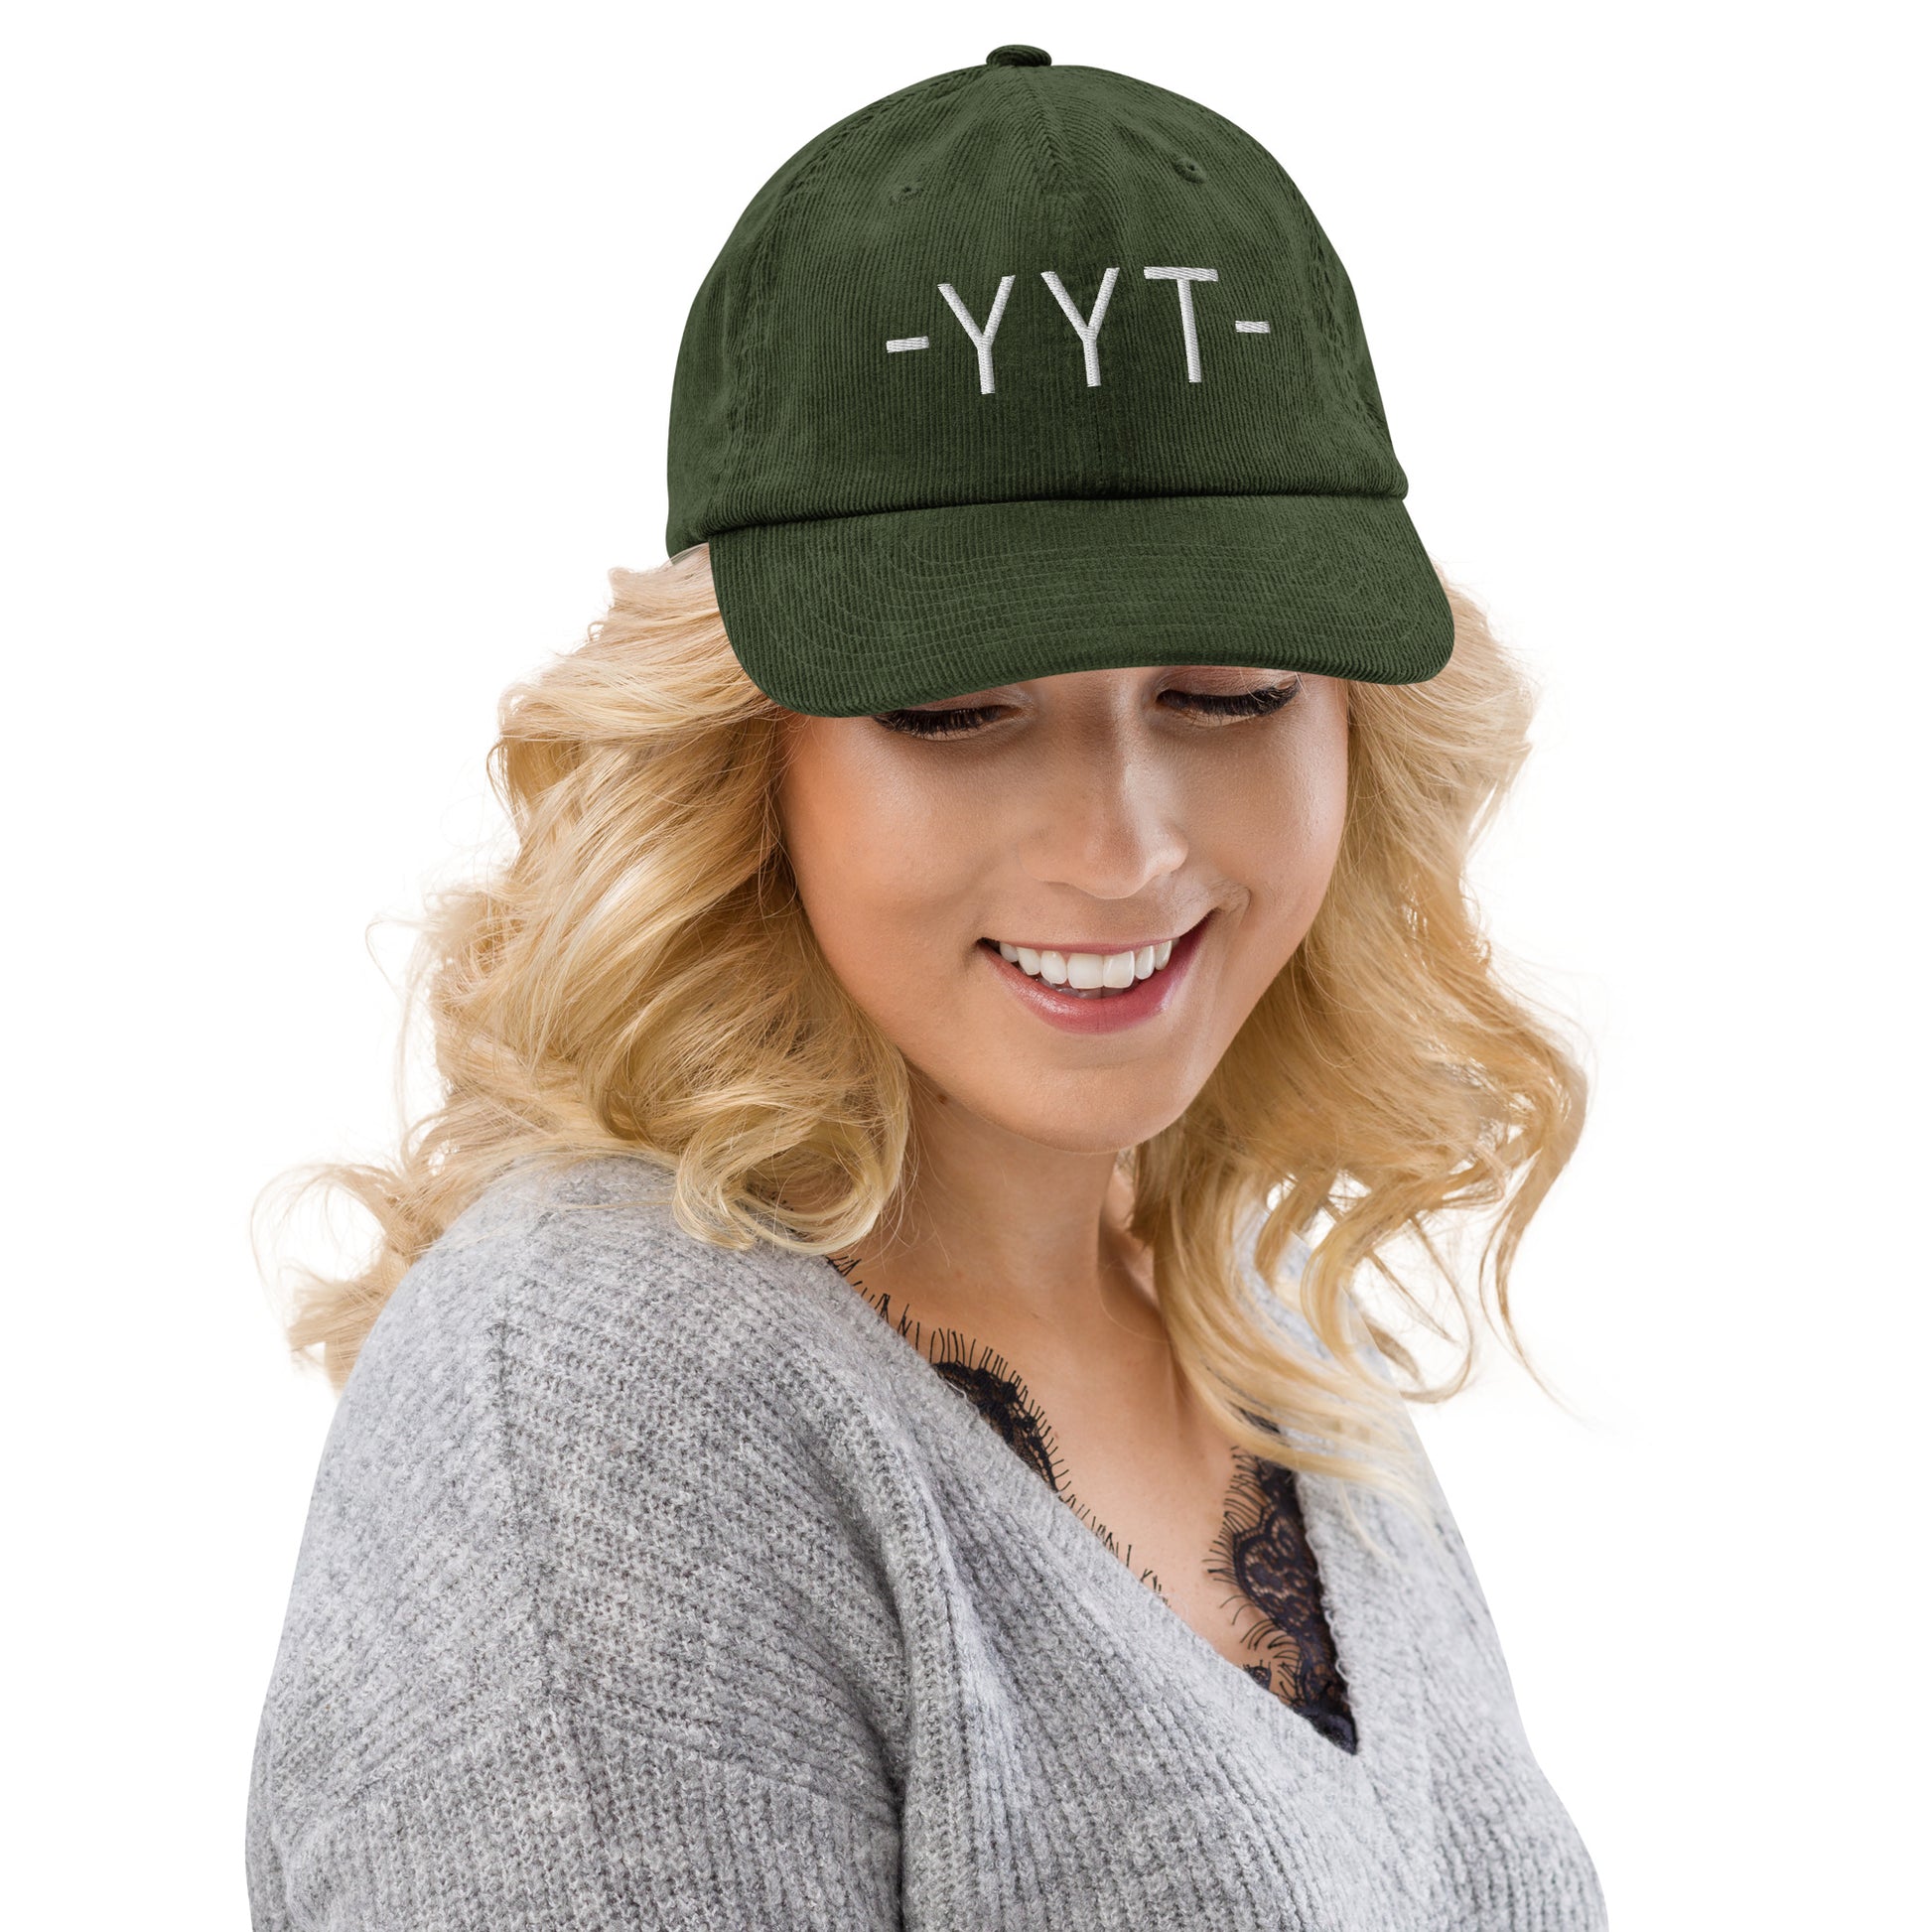 Souvenir Corduroy Hat - White • YYT St. John's • YHM Designs - Image 08